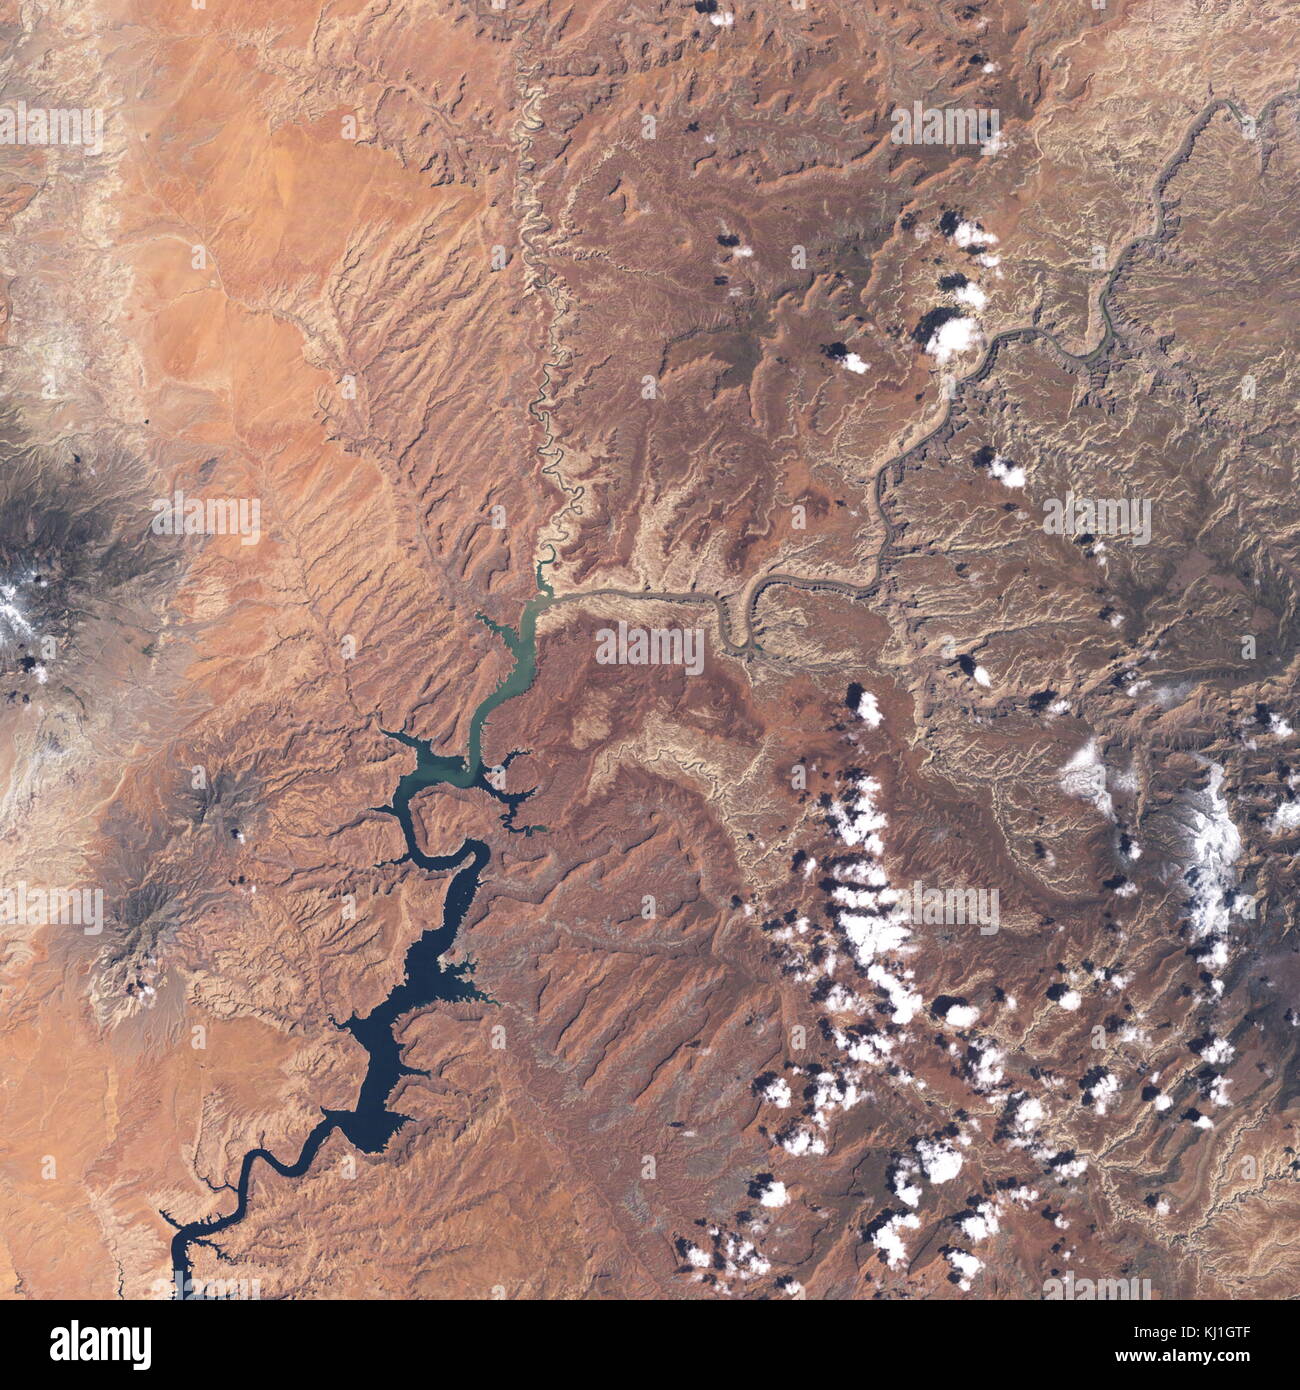 Lake Powell, est un réservoir sur la rivière Colorado, chevauchant la frontière entre l'Utah et l'Arizona (la plupart d'elle, avec pont en arc-en-ciel, est dans l'Utah). C'est le deuxième plus grand réservoir de capacité maximale de l'eau aux États-Unis derrière le Lac Mead. Image satellite, prises en 2002 Banque D'Images